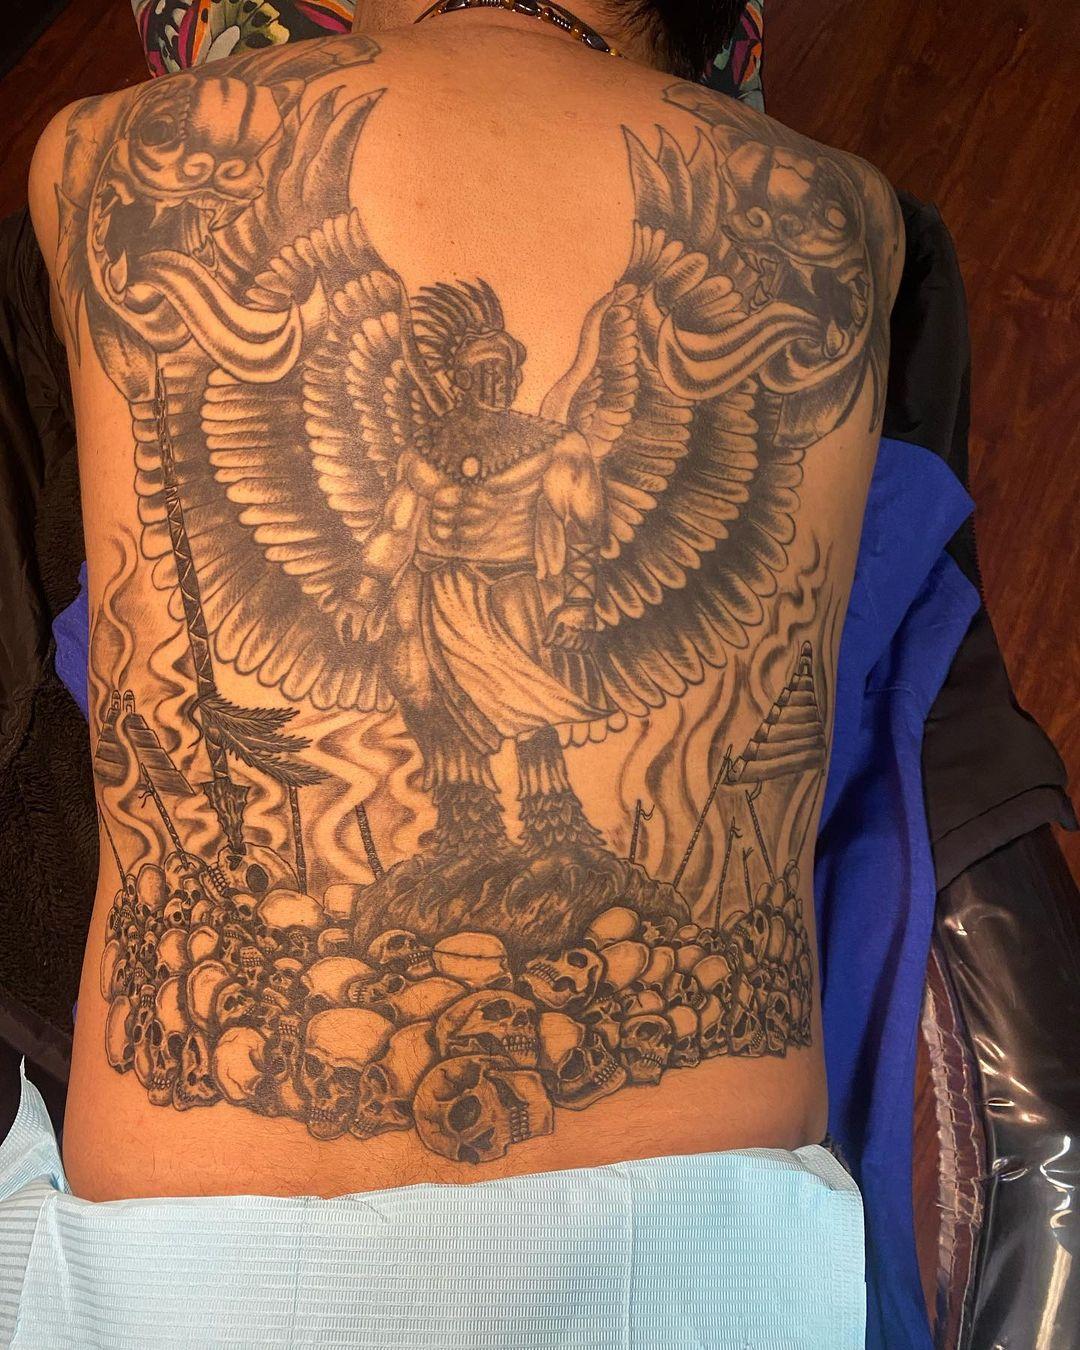 Eagle tattoos for back